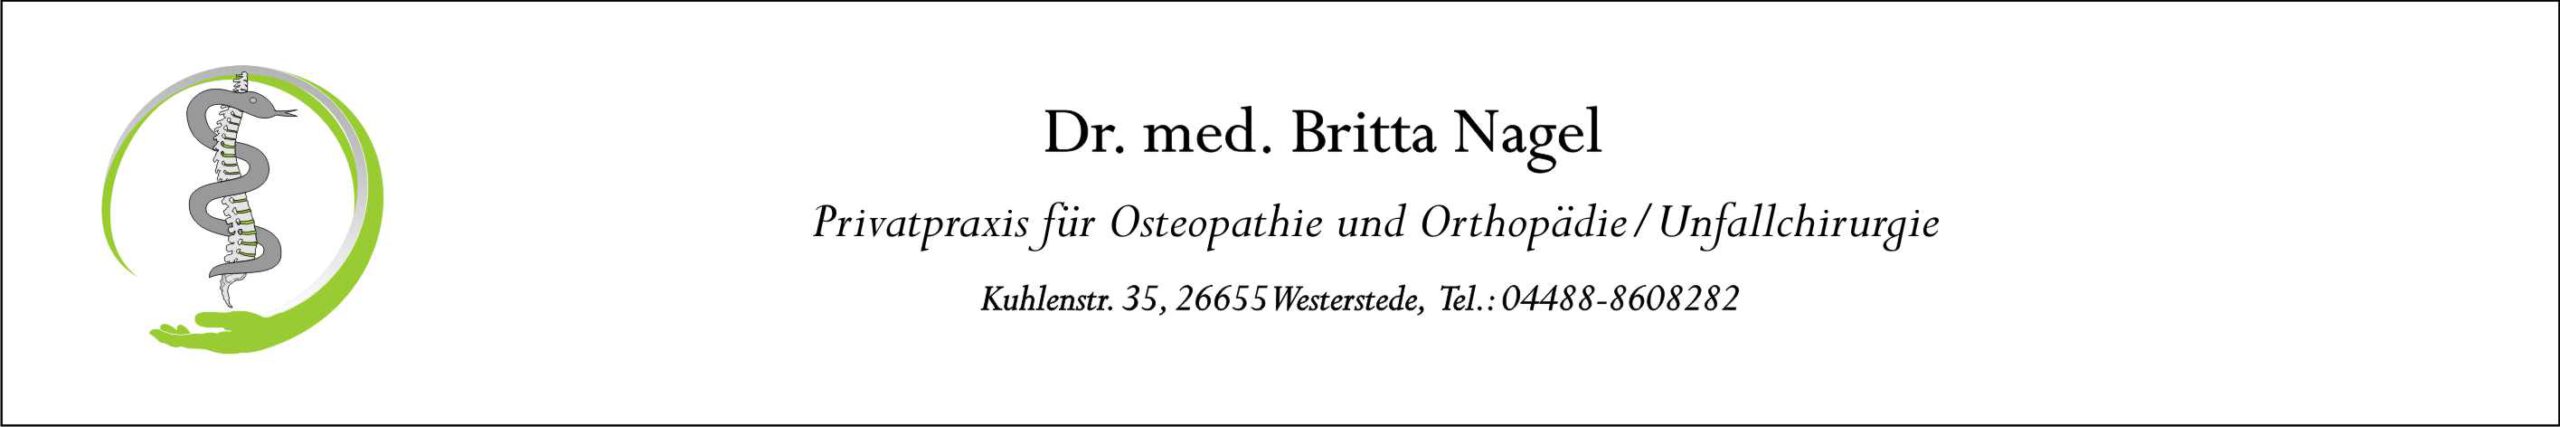 Dr. med Britta Nagel